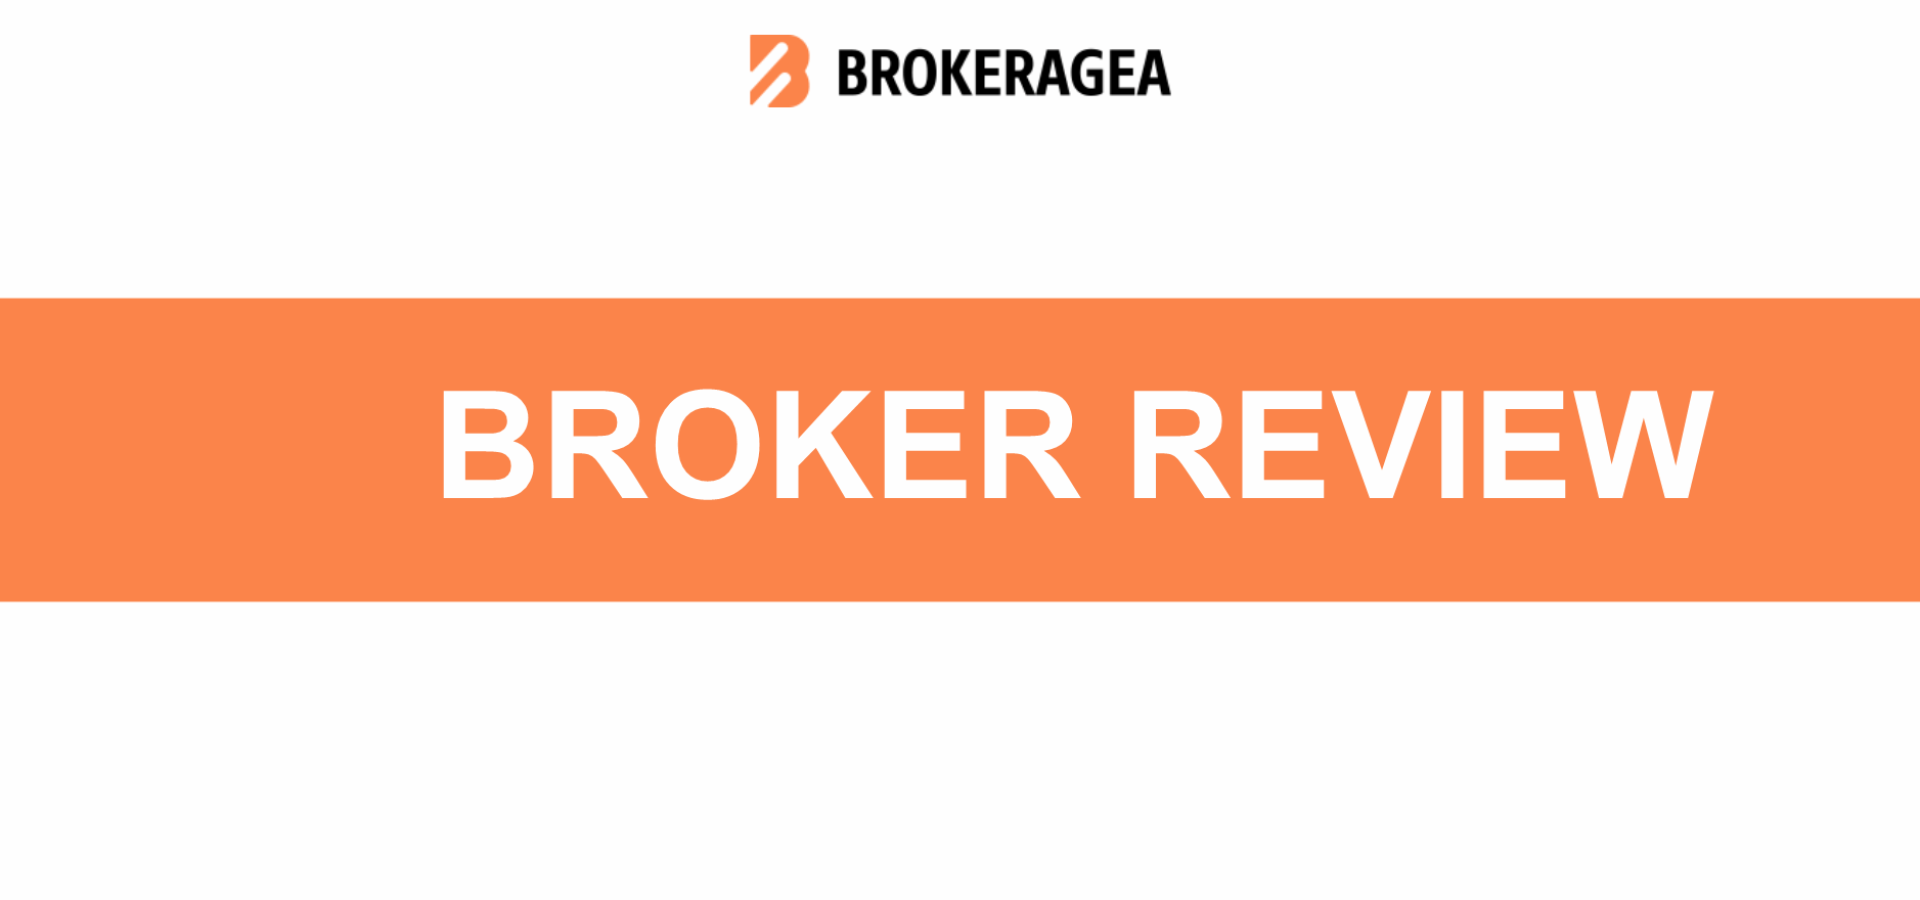 BROKERAGEA Review